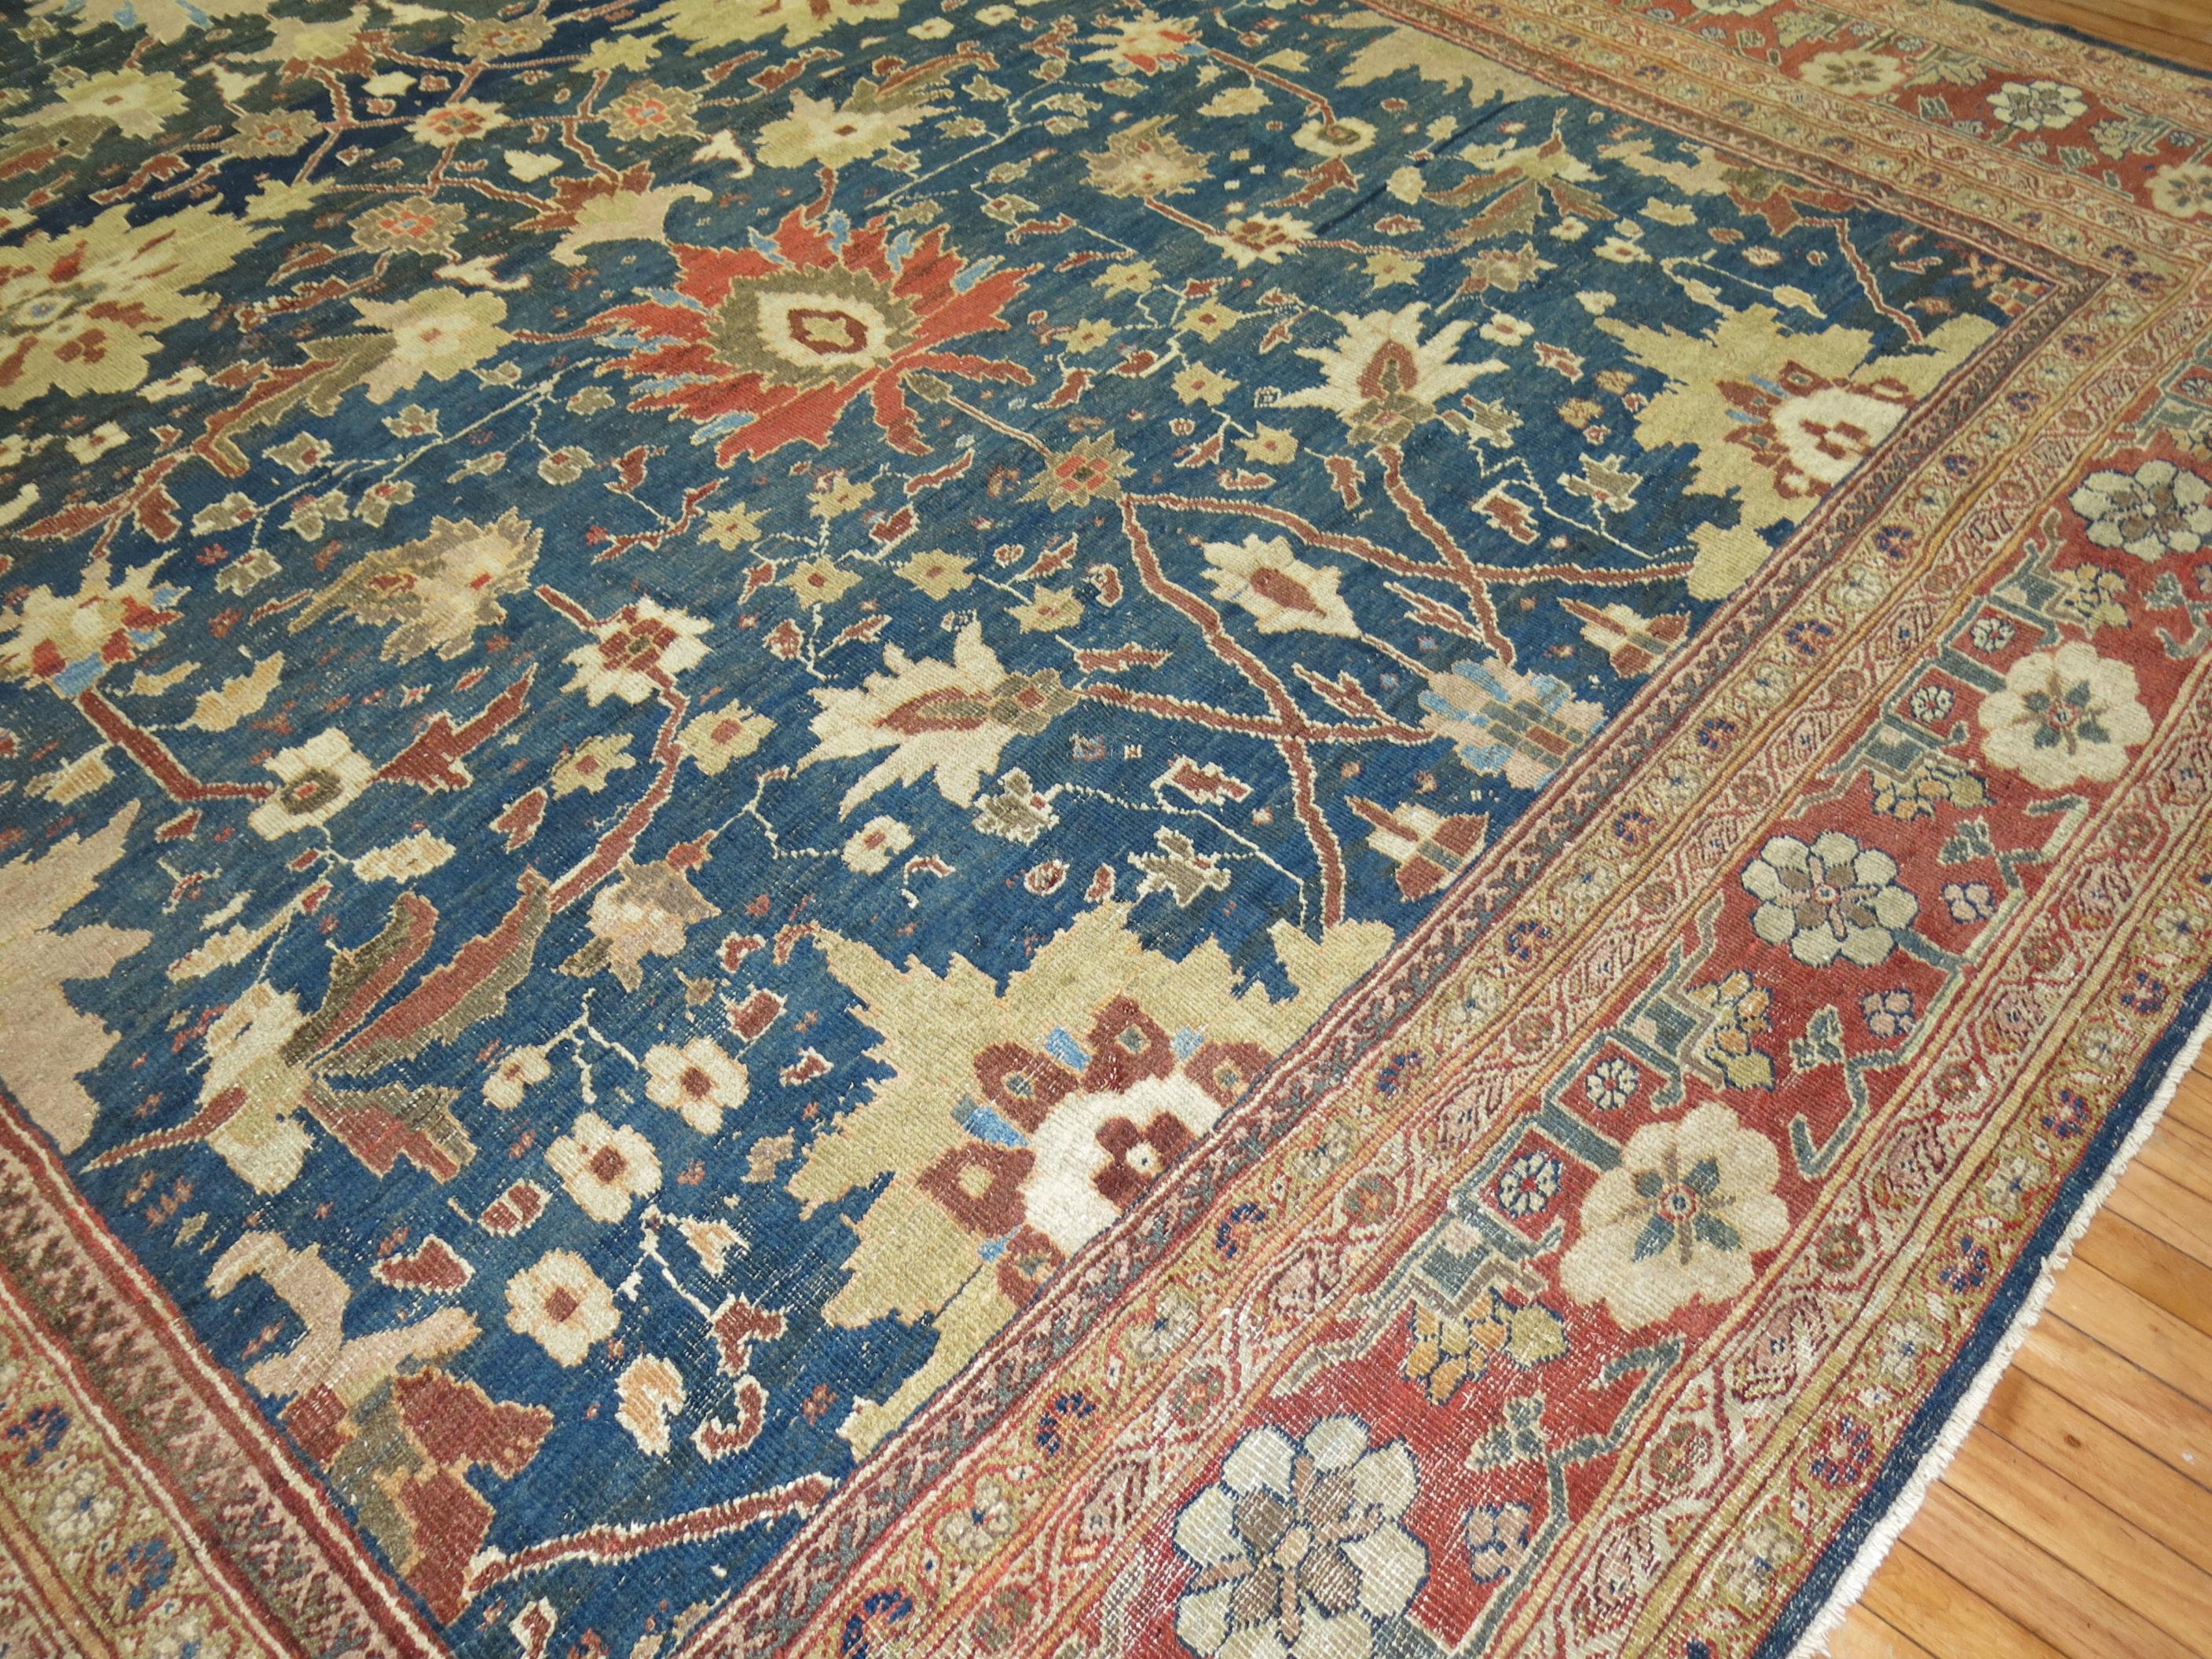 Phenomenal großformatiger antiker persischer Sultanabad Mahal-Teppich (Handgewebt)